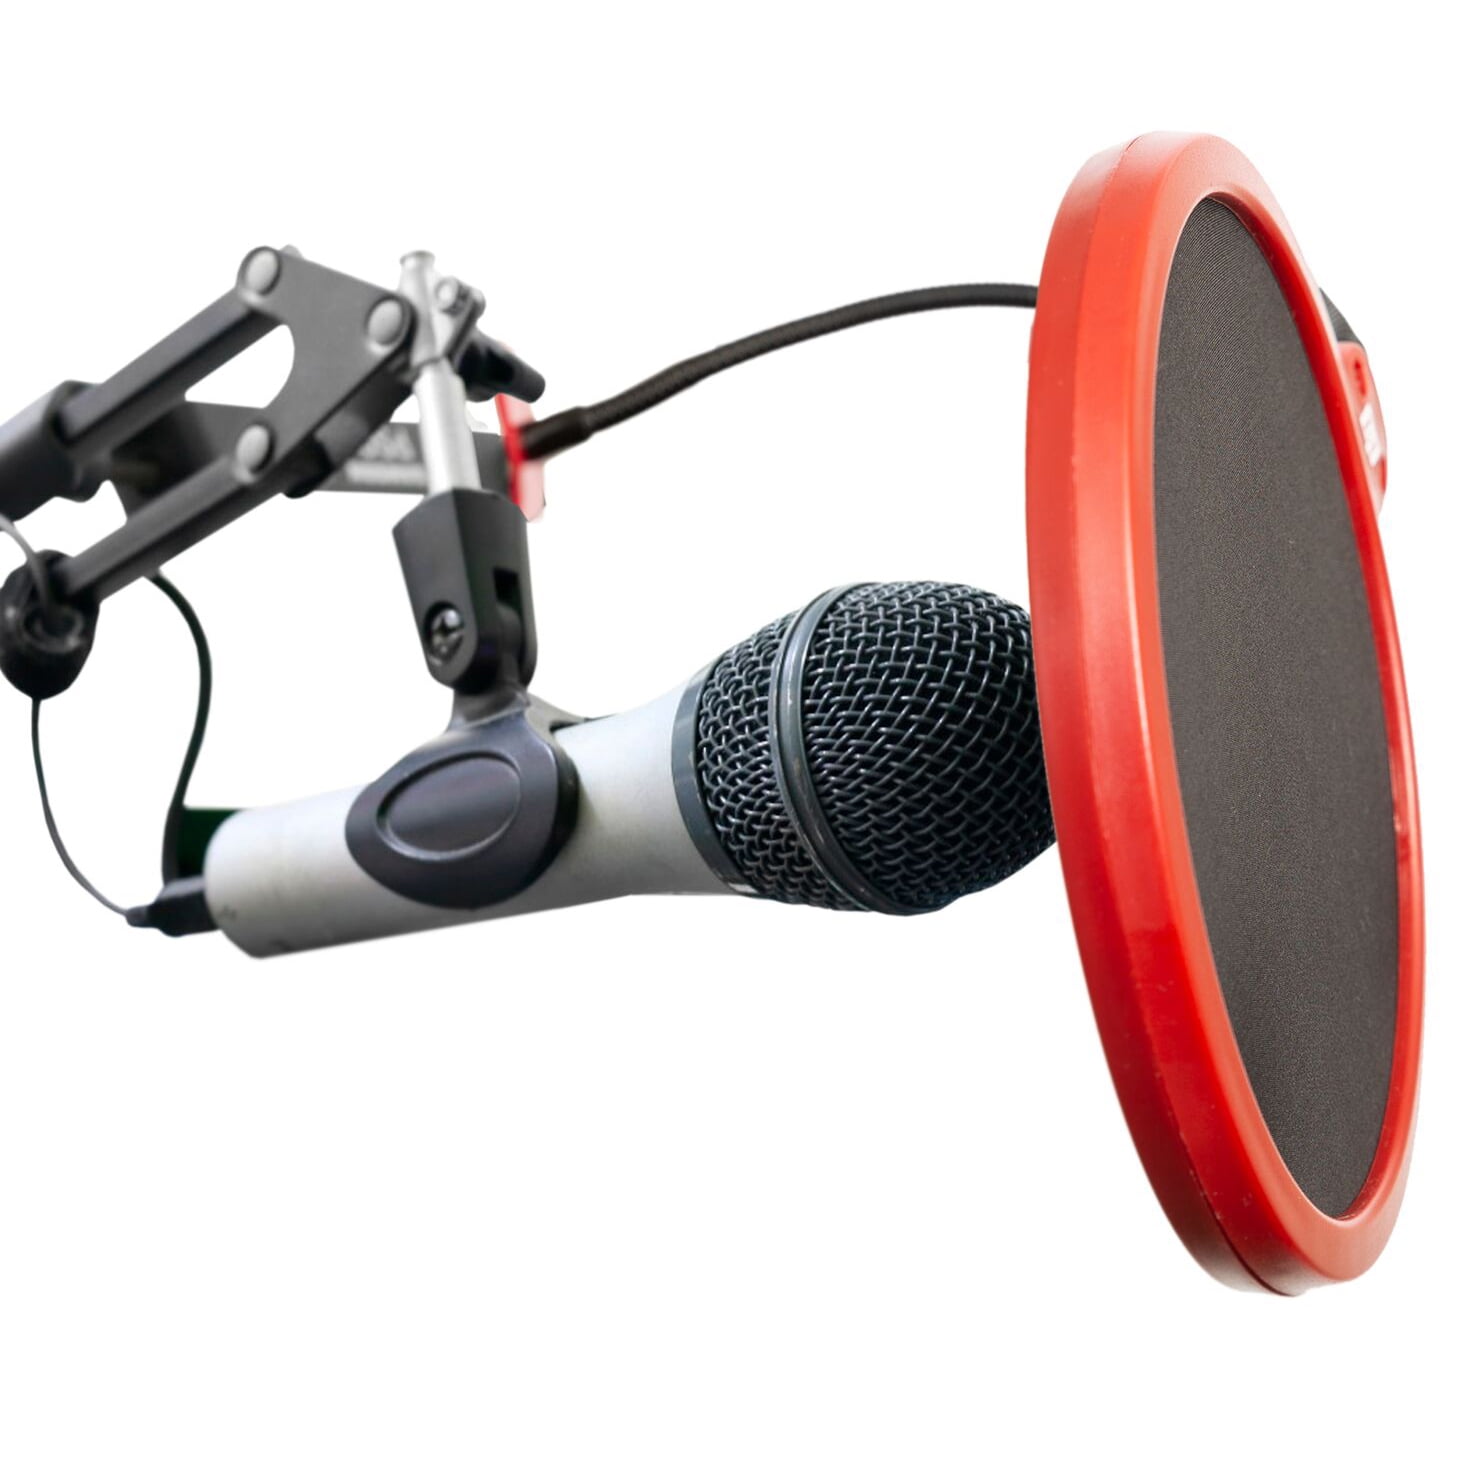 Specialiteit uitvinden Van toepassing zijn Deco Gear Universal Double Layer Pop Filter Microphone Wind Screen with  Adjustable Goose Neck Mic Stand Clip (Black with Red Trim) - Walmart.com